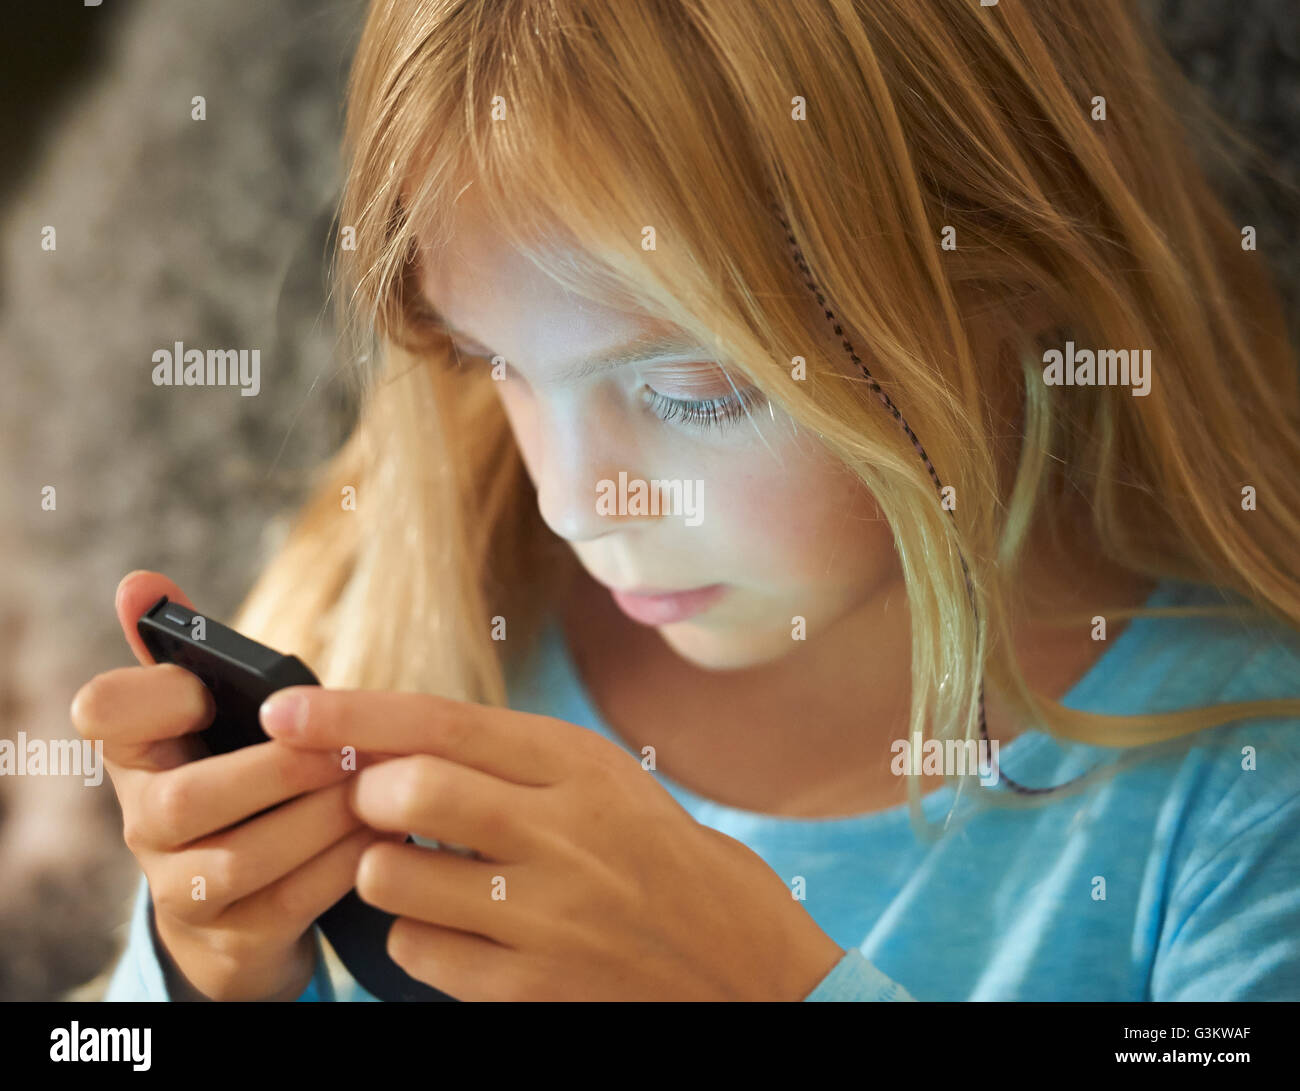 Chica busca en el smartphone, rostro iluminado por el resplandor de la pantalla Foto de stock